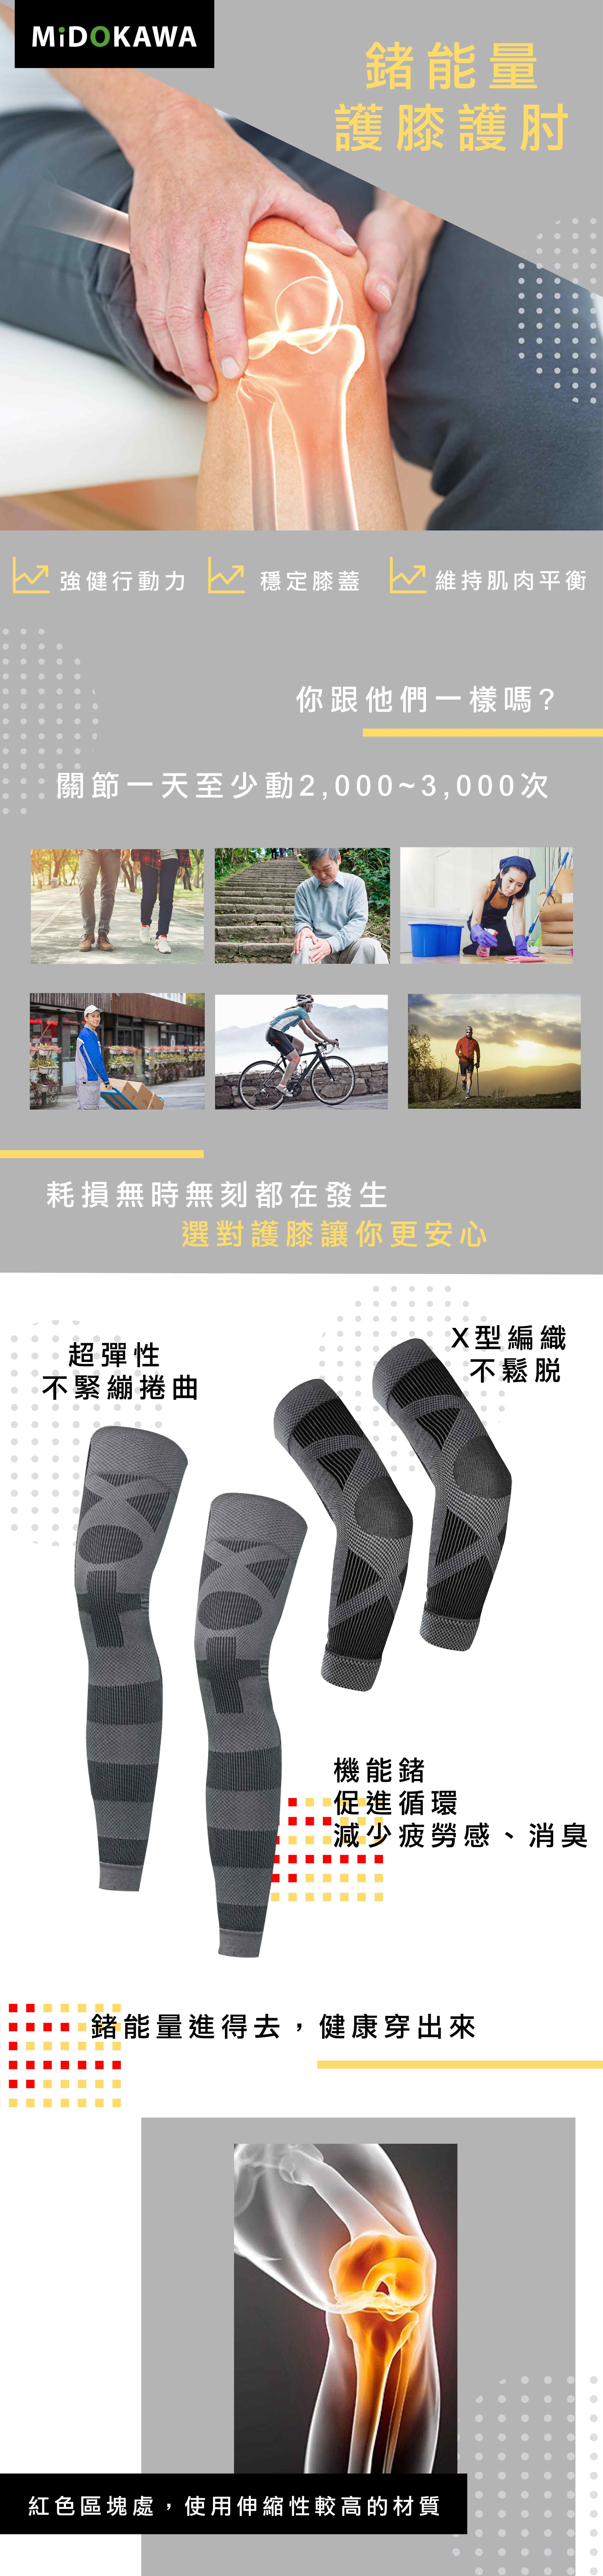 【日本 MiDOKAWA】鍺能量護膝護肘套組